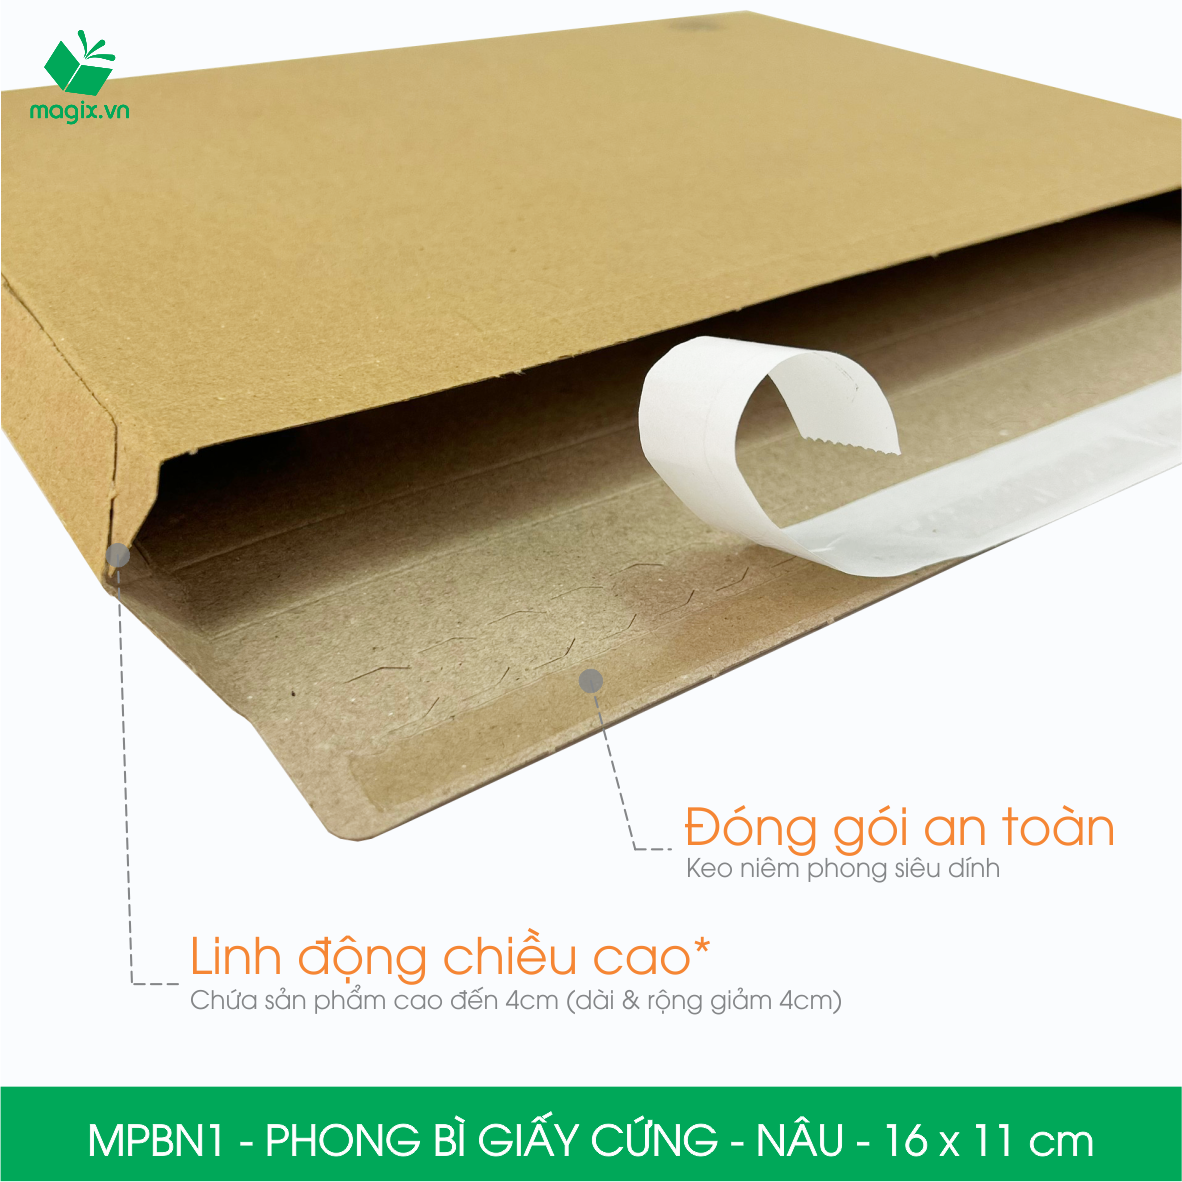 MPBN1 - 16x11 cm - Combo 60 phong bì giấy cứng đóng hàng màu nâu thay thế túi gói hàng